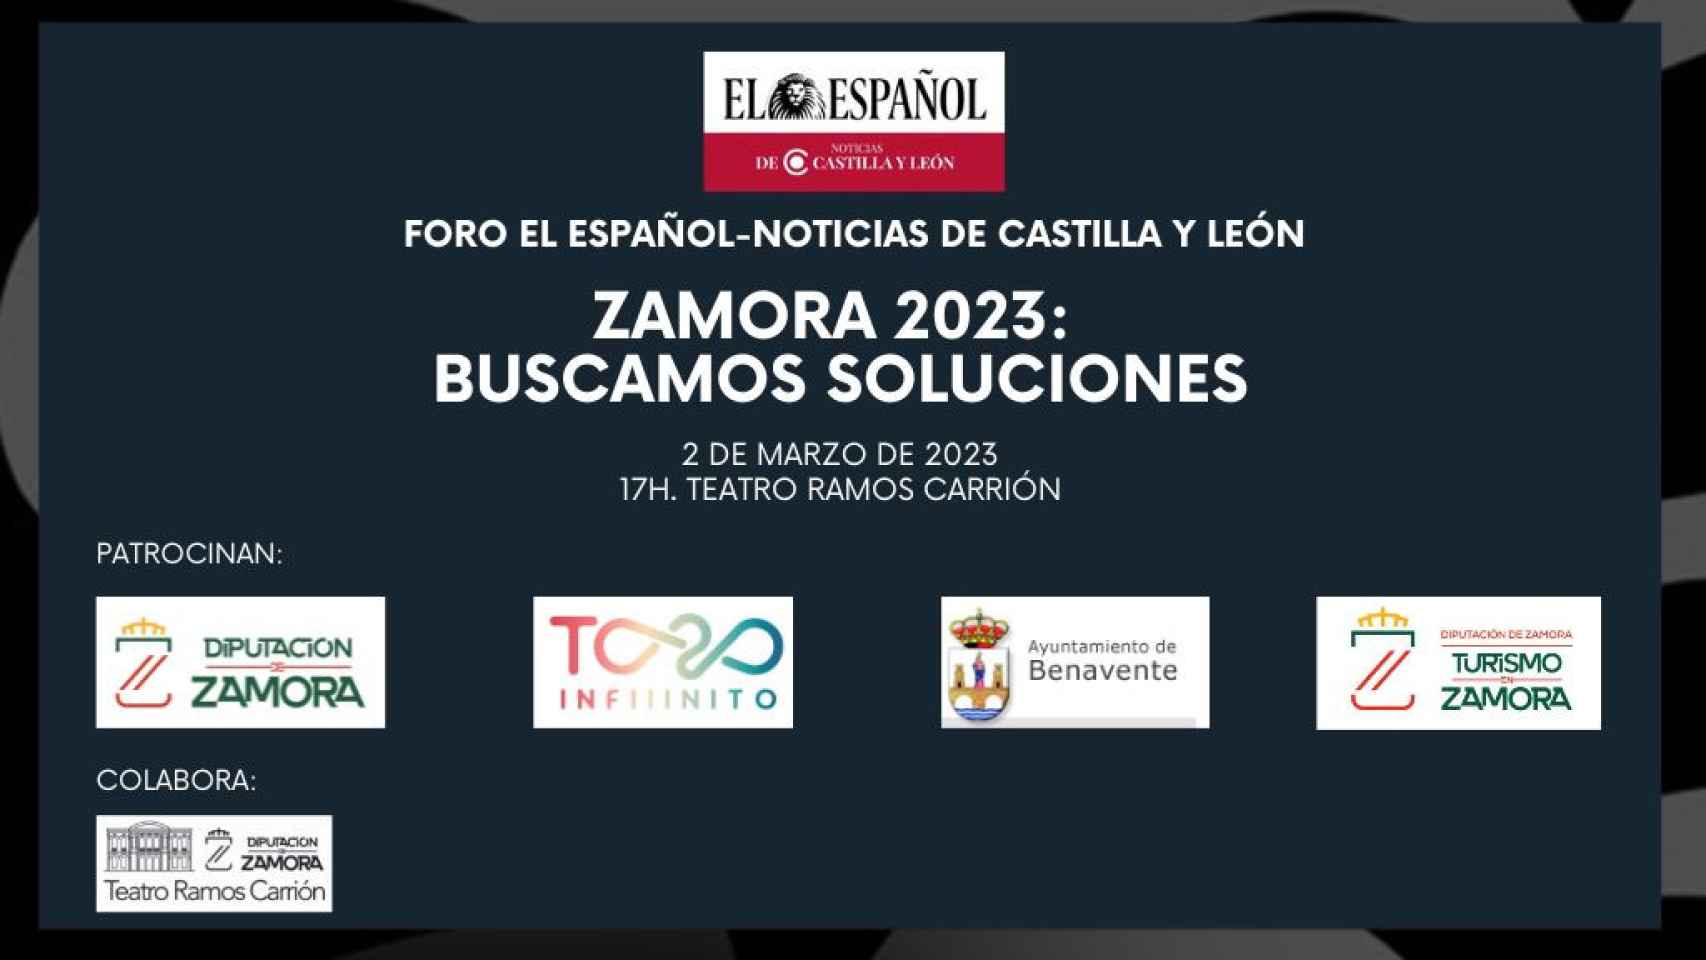 Patrocinadores y colaboradores del foro 'Zamora 2023: buscamos soluciones'.